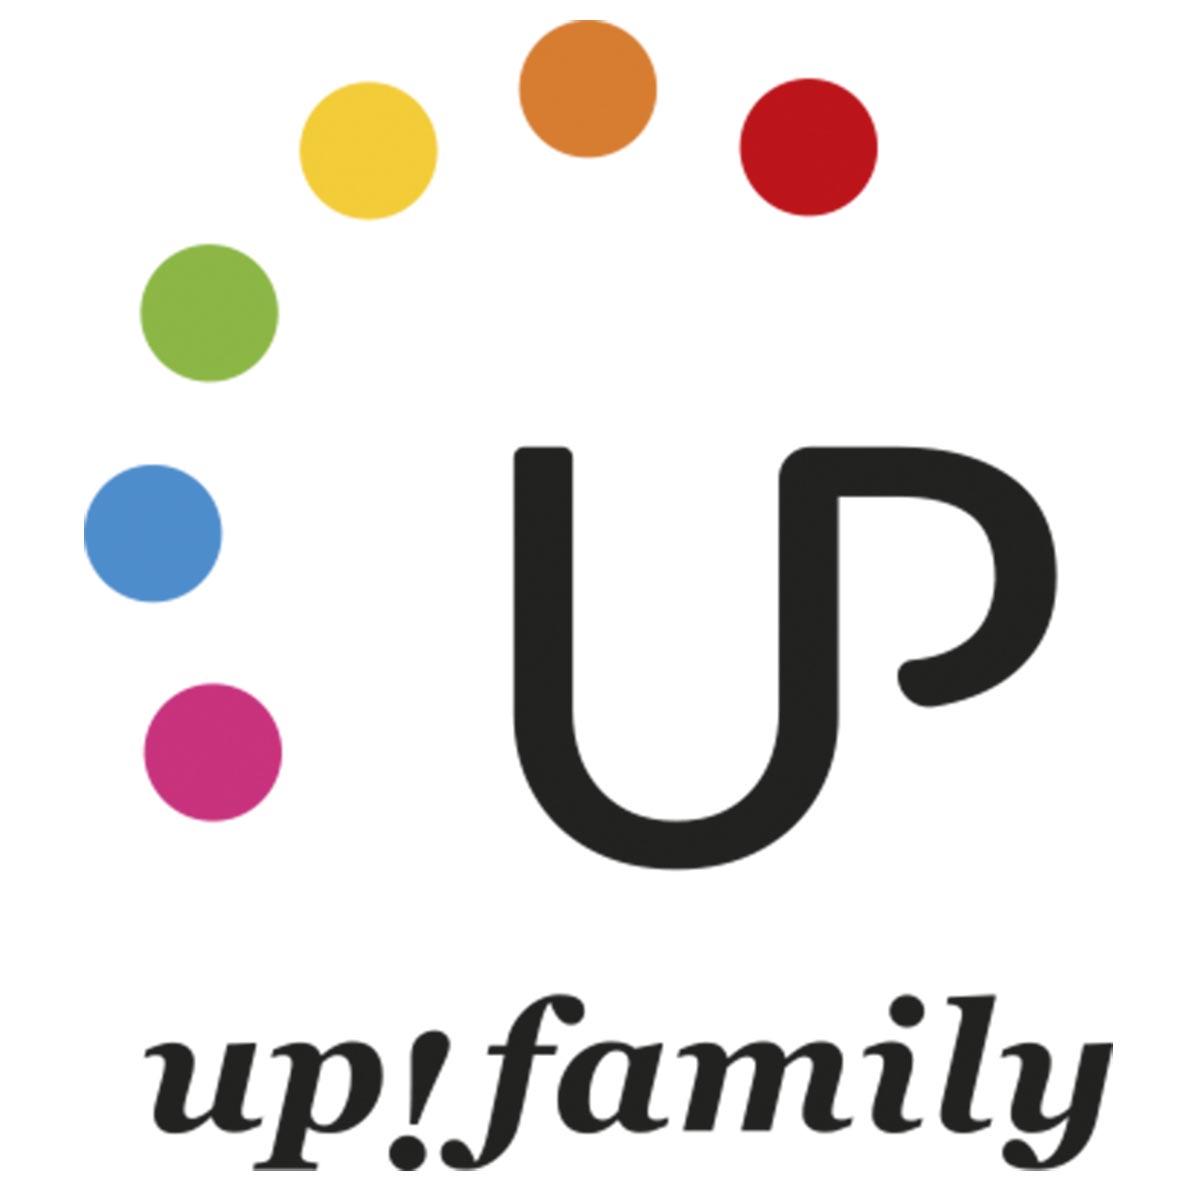 Logotipo Up!family